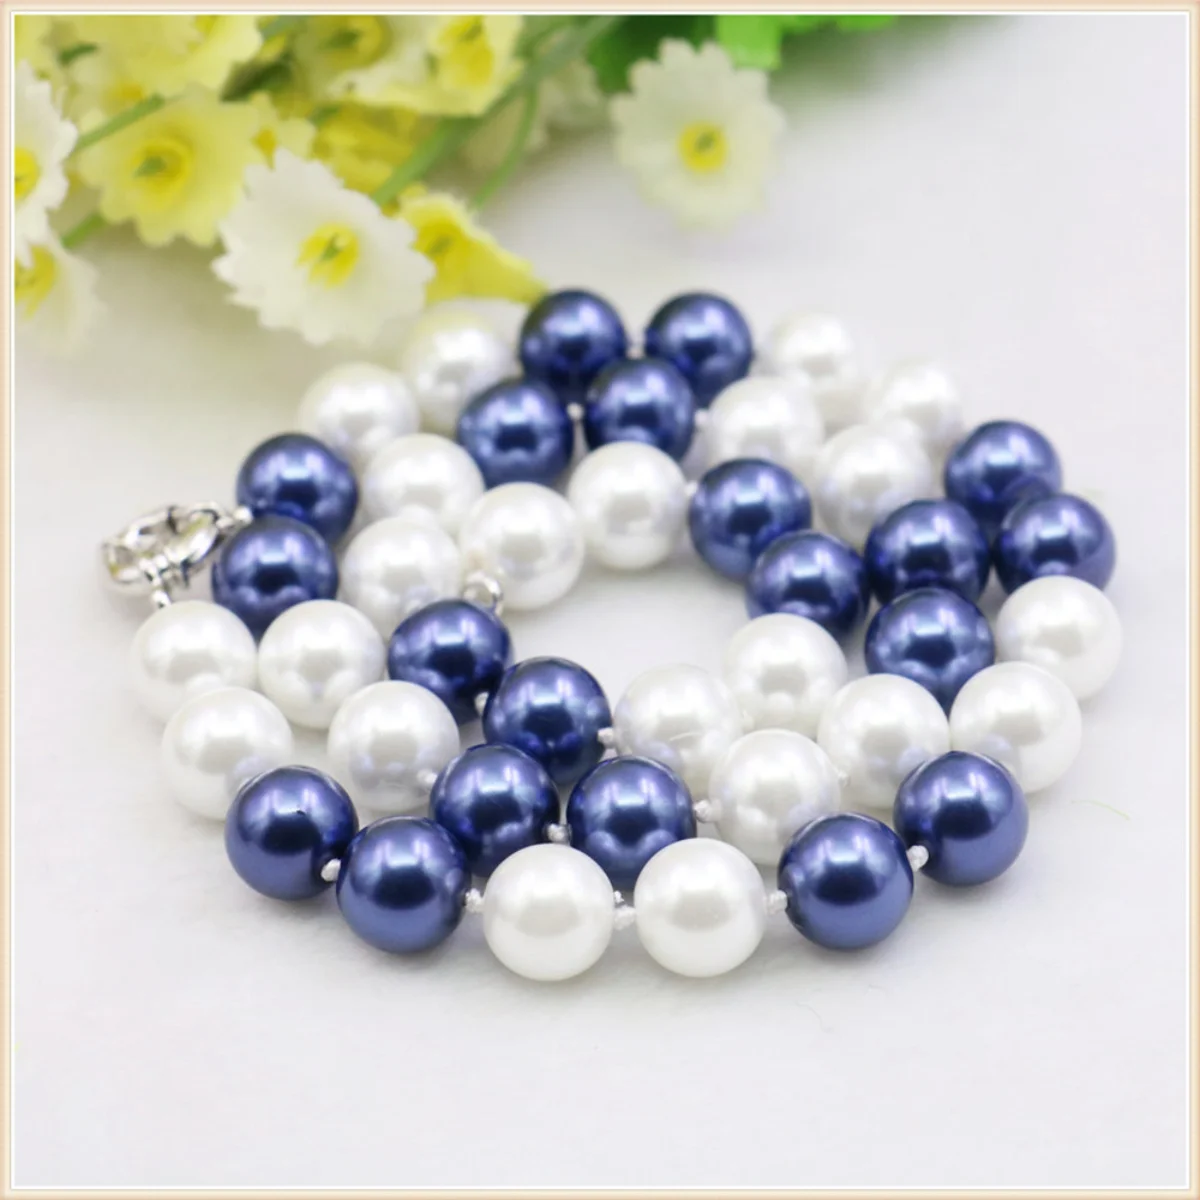 10mm Yuvarlak Beyaz Mavi Renkli Kabuk İnci Kolye moda takı Yapımı Tasarım Anneler Hediyeler DIY Düğümlü Arasında Her Boncuk